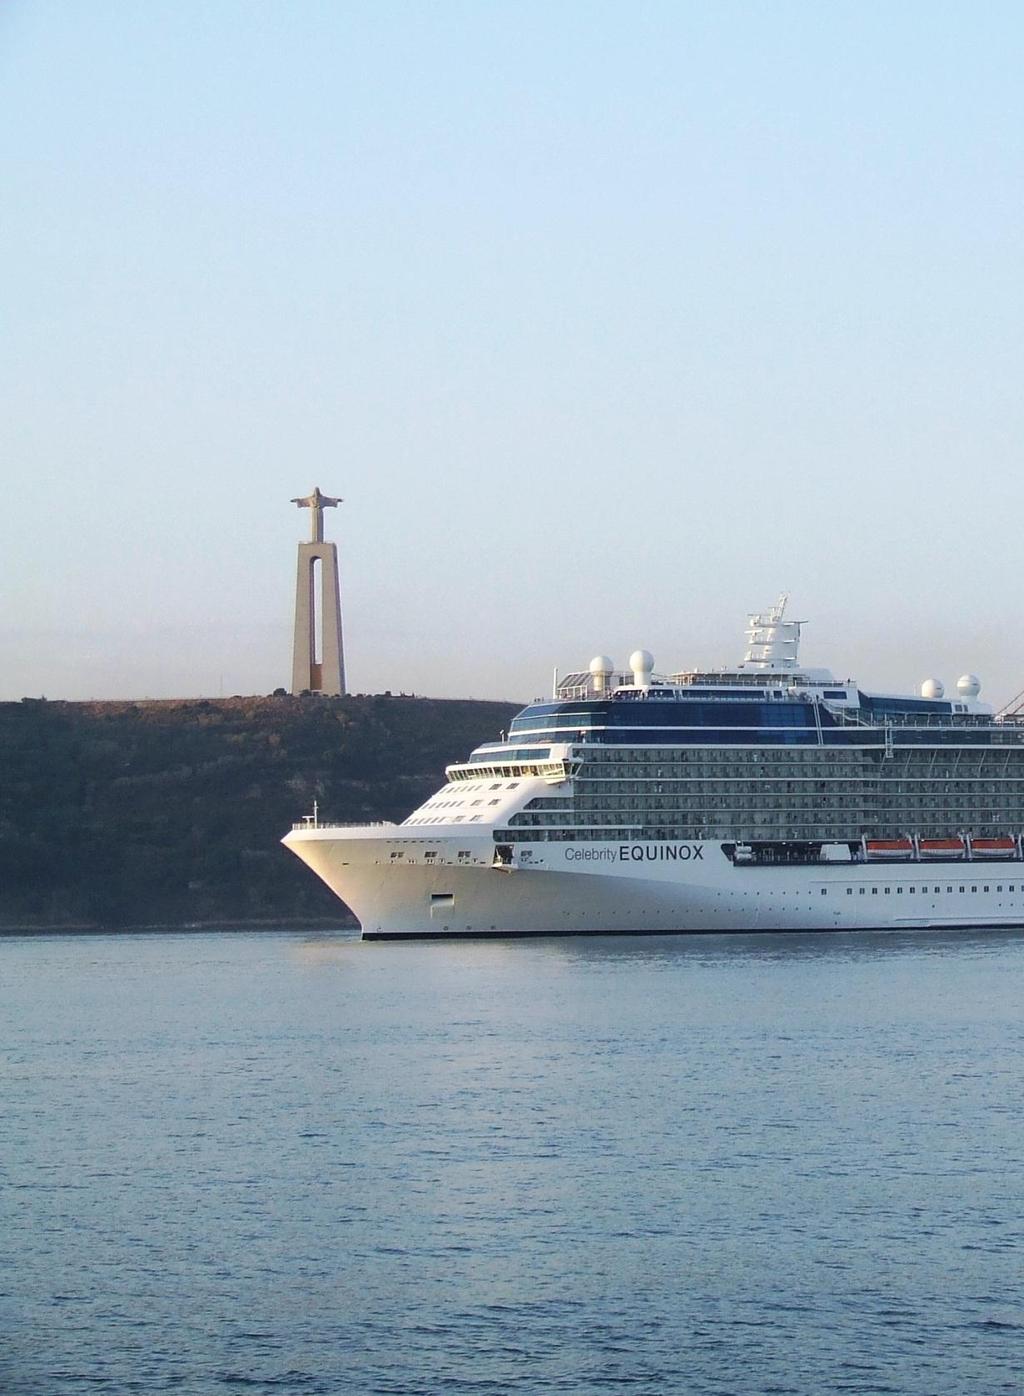 Cruise worldwide 2012 20,12 M passengers Nationalities 12,16M